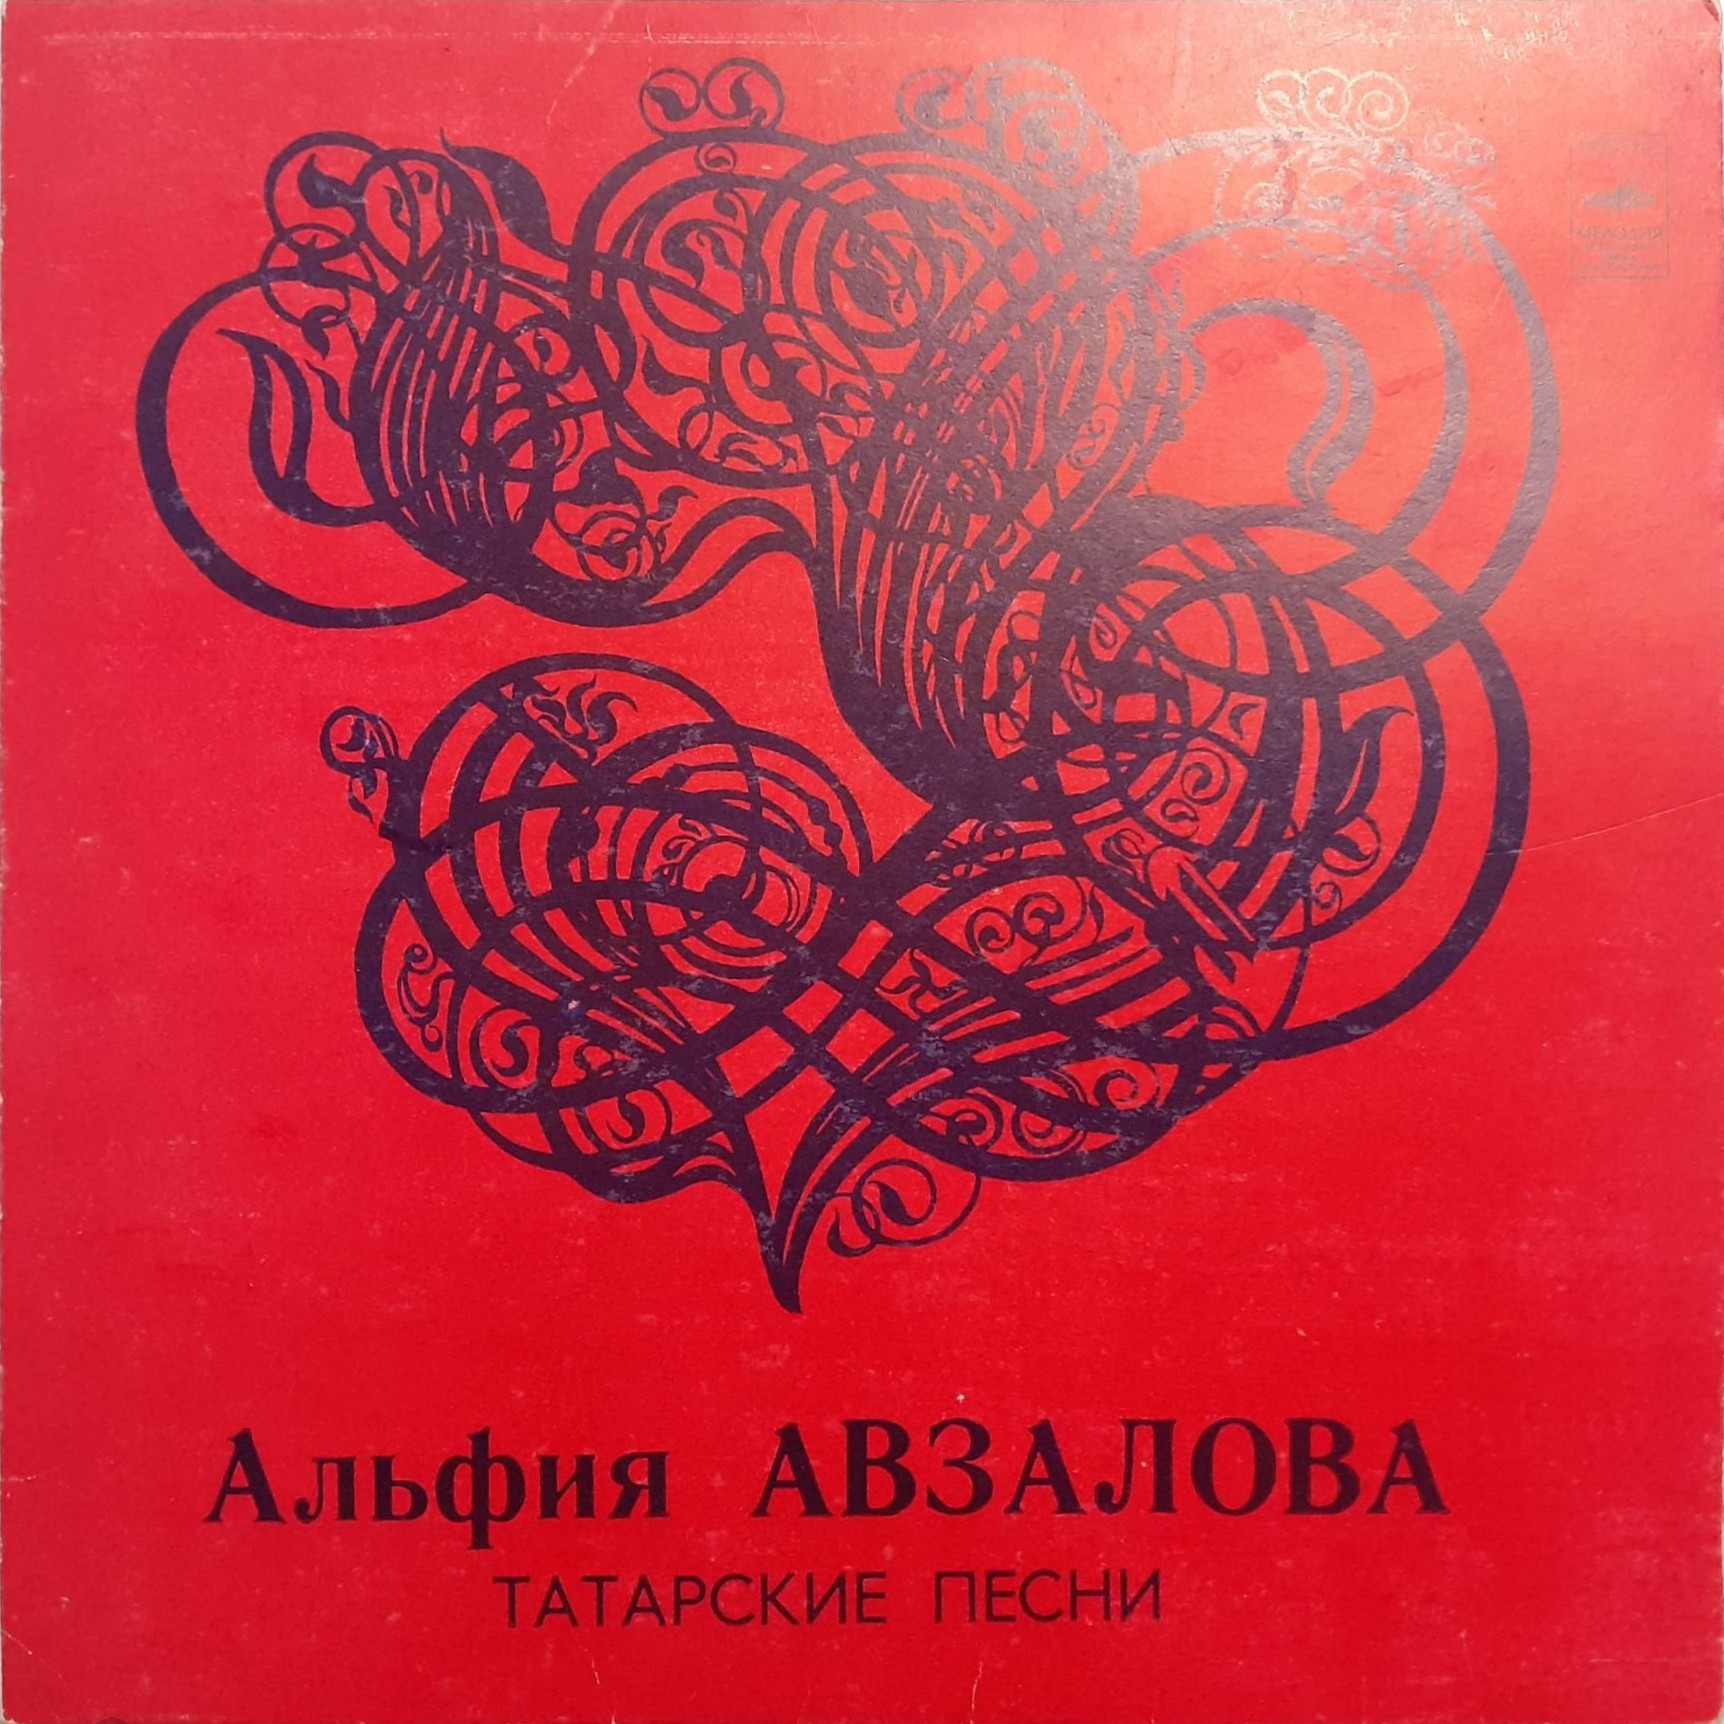 Альфия АВЗАЛОВА: «Татарские песни»